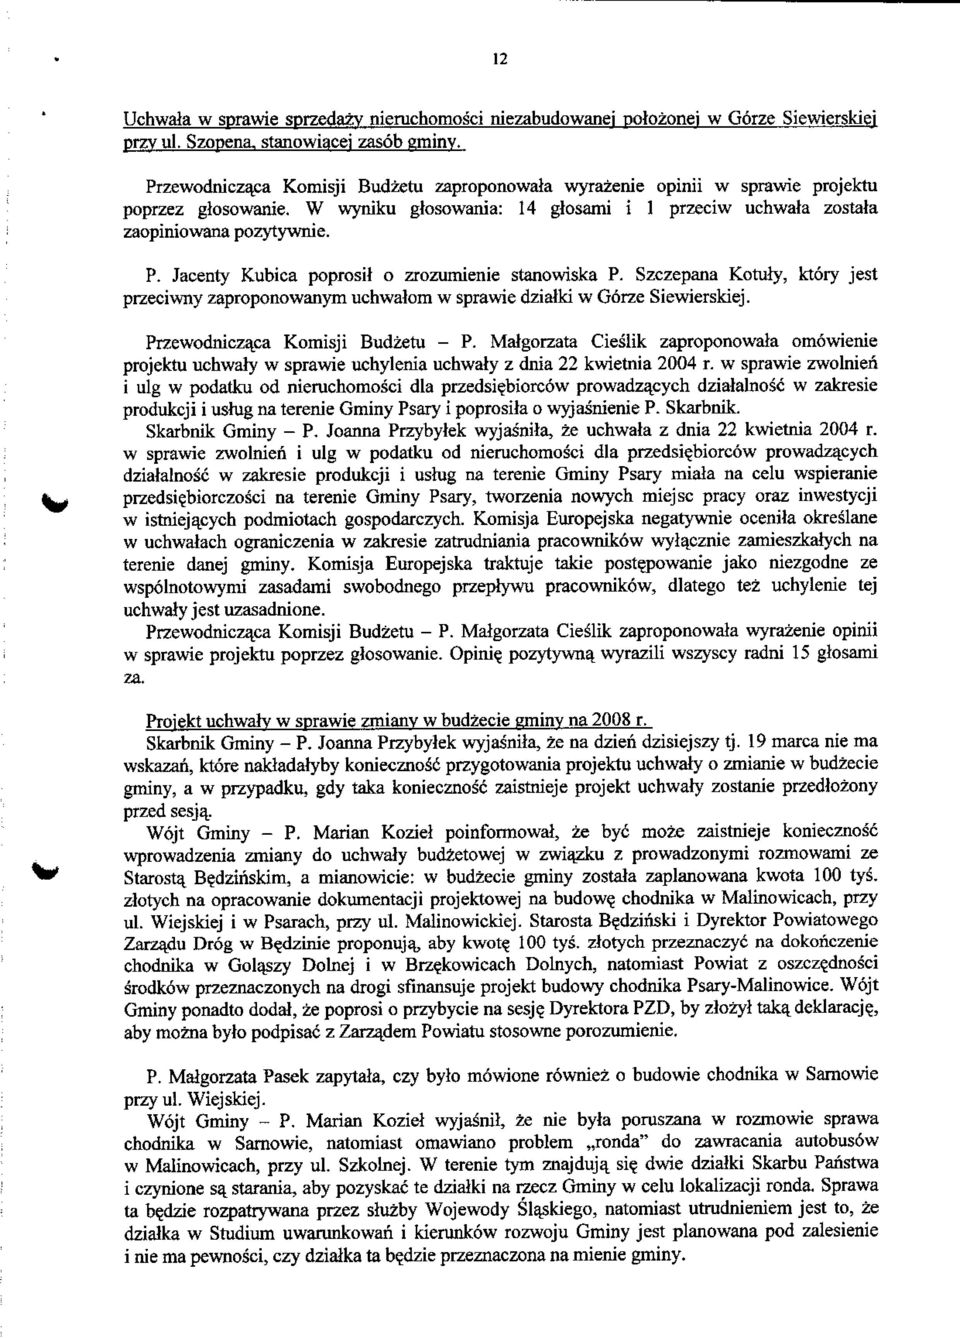 Jacenty Kubica poprosit o zrozumienie stanowiska P. Szczepana Kotuly, ktory jest przeciwny zaproponowanym uchwalom w sprawie dzialki w Gorze Siewierskiej. Przewodnicza_ca Komisji Budzetu - P.